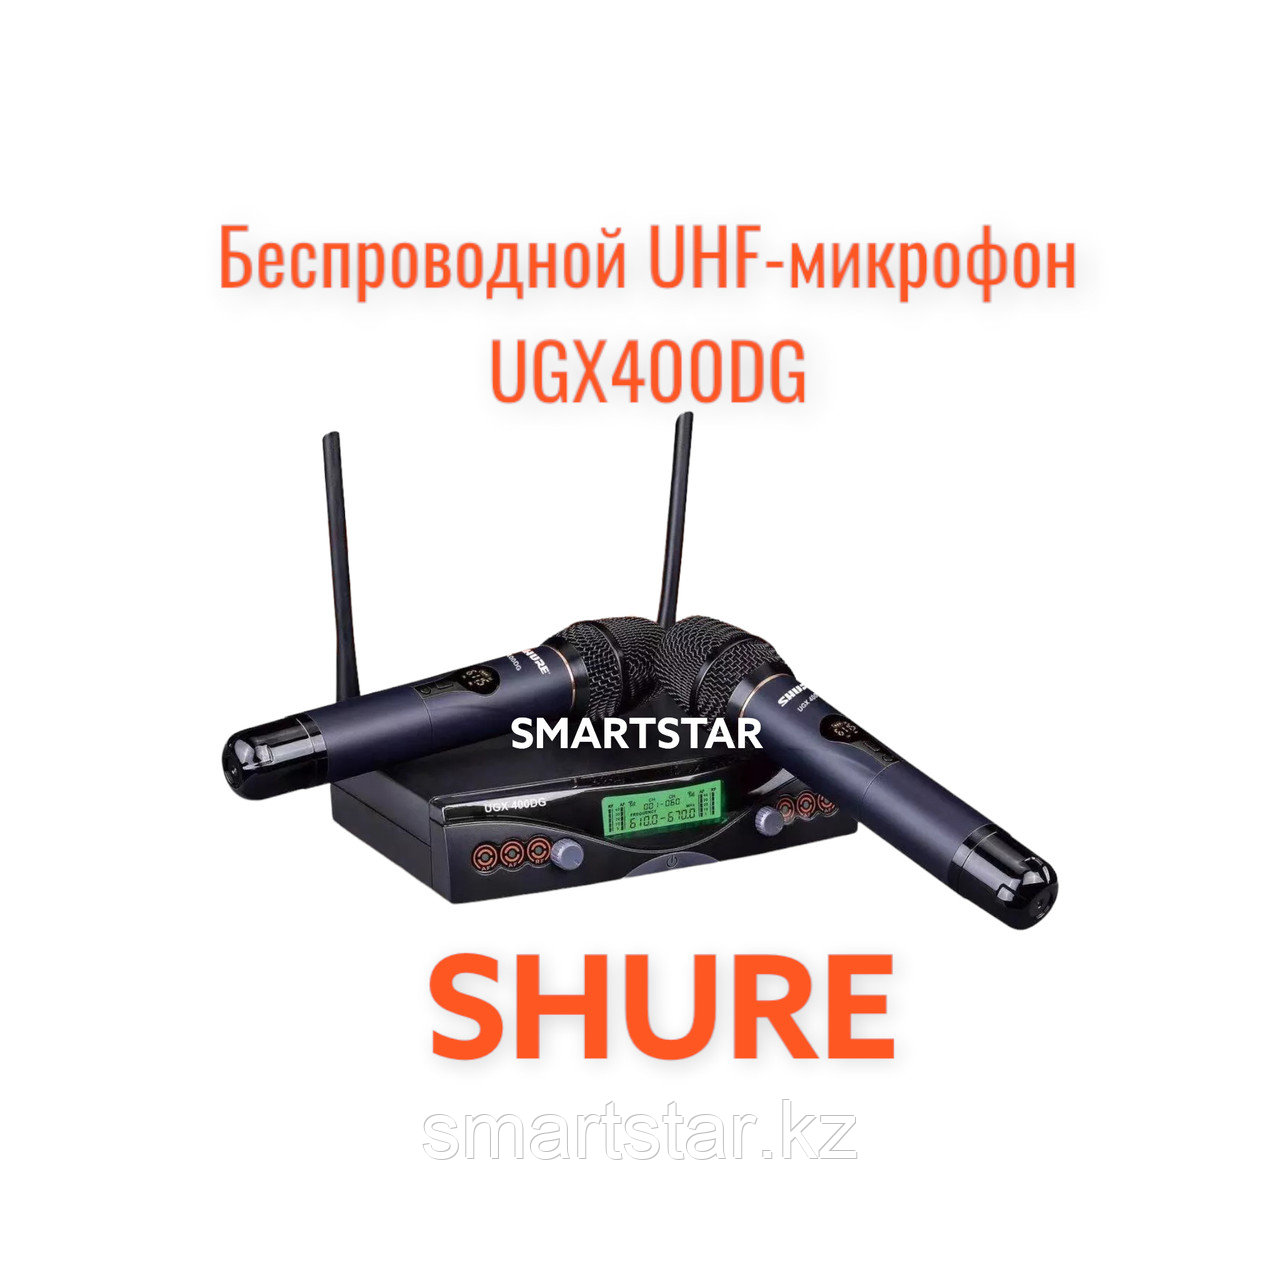 Беспроводная микрофонная радиосистема Shure UGX400GD